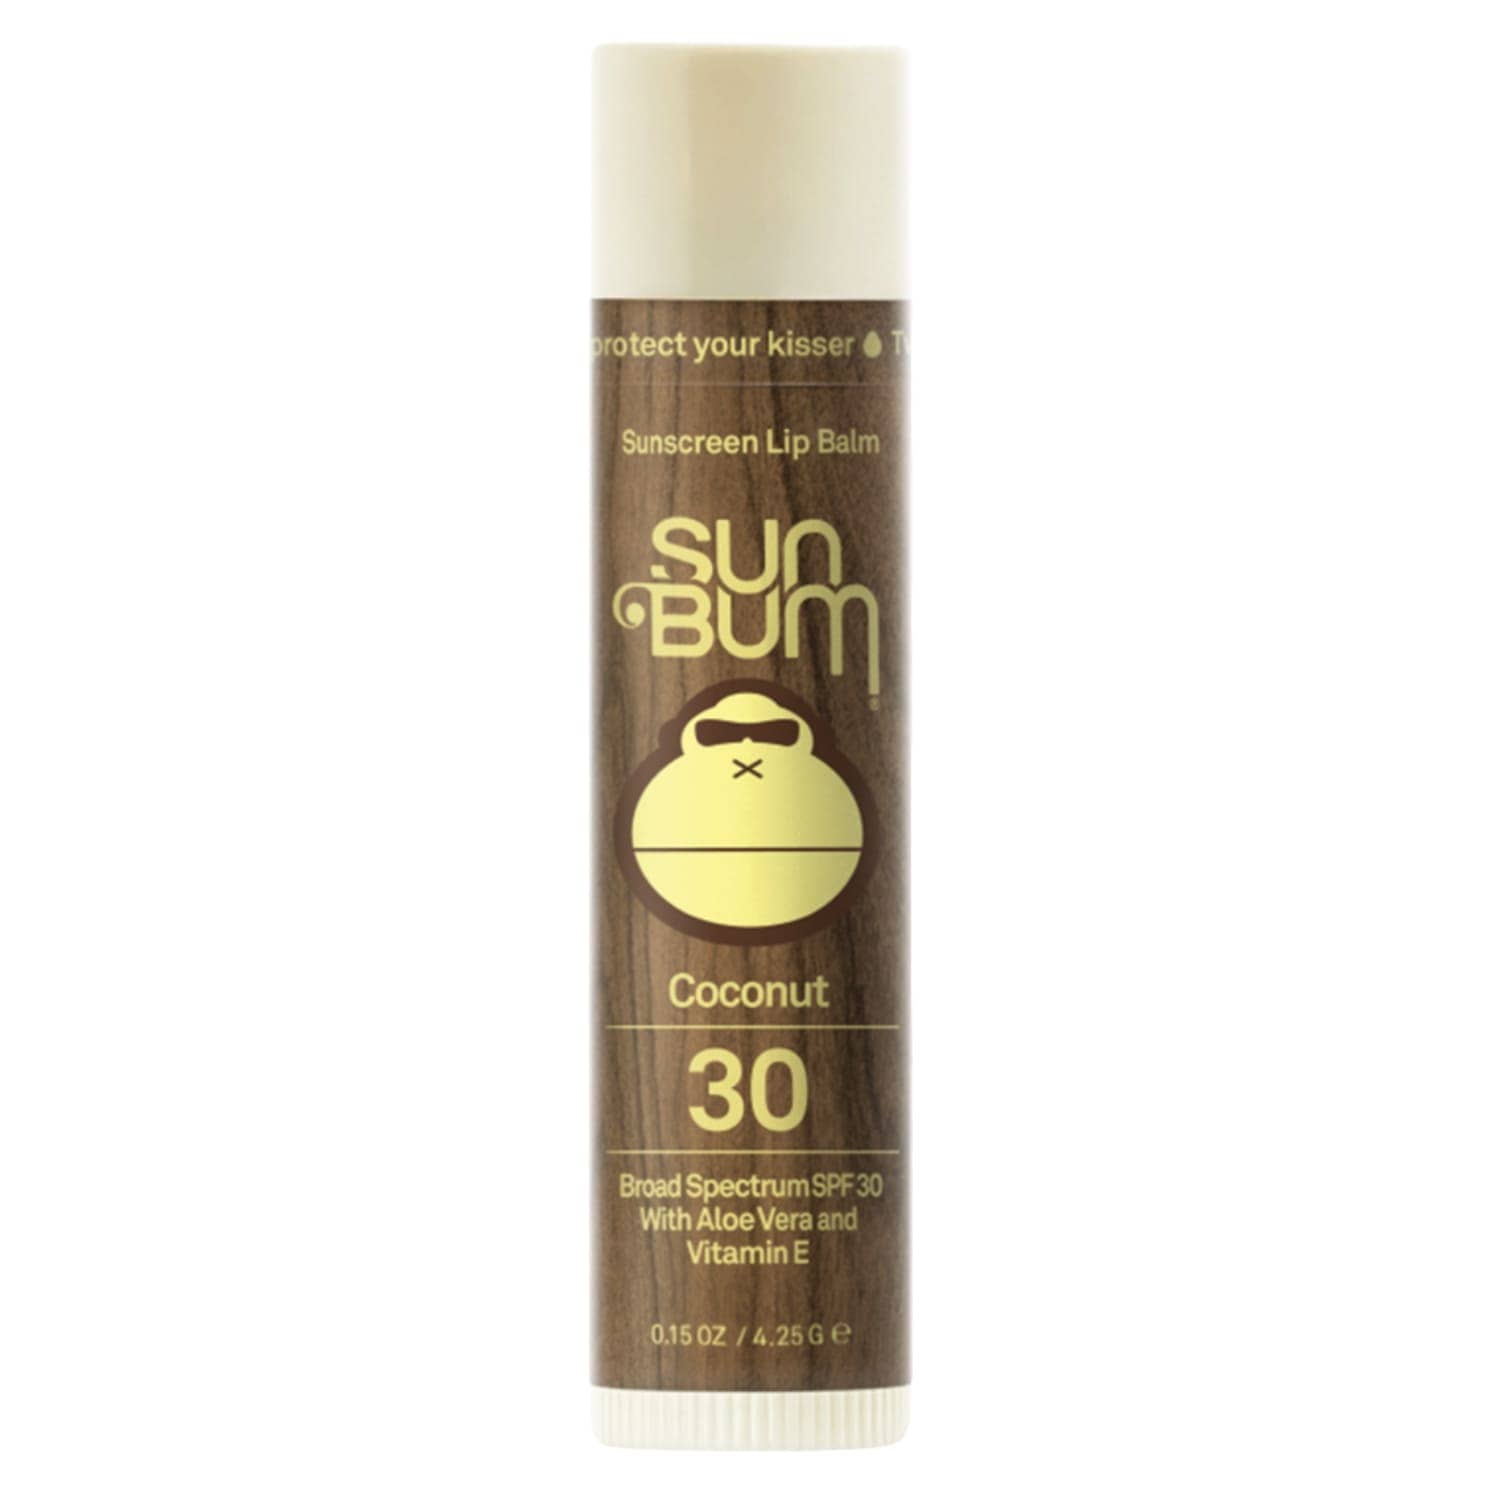 Sun Bum Original SPF 30 Sunscreen Lip Balm Coconut - Lip Balm by Sun Bum 4.25g